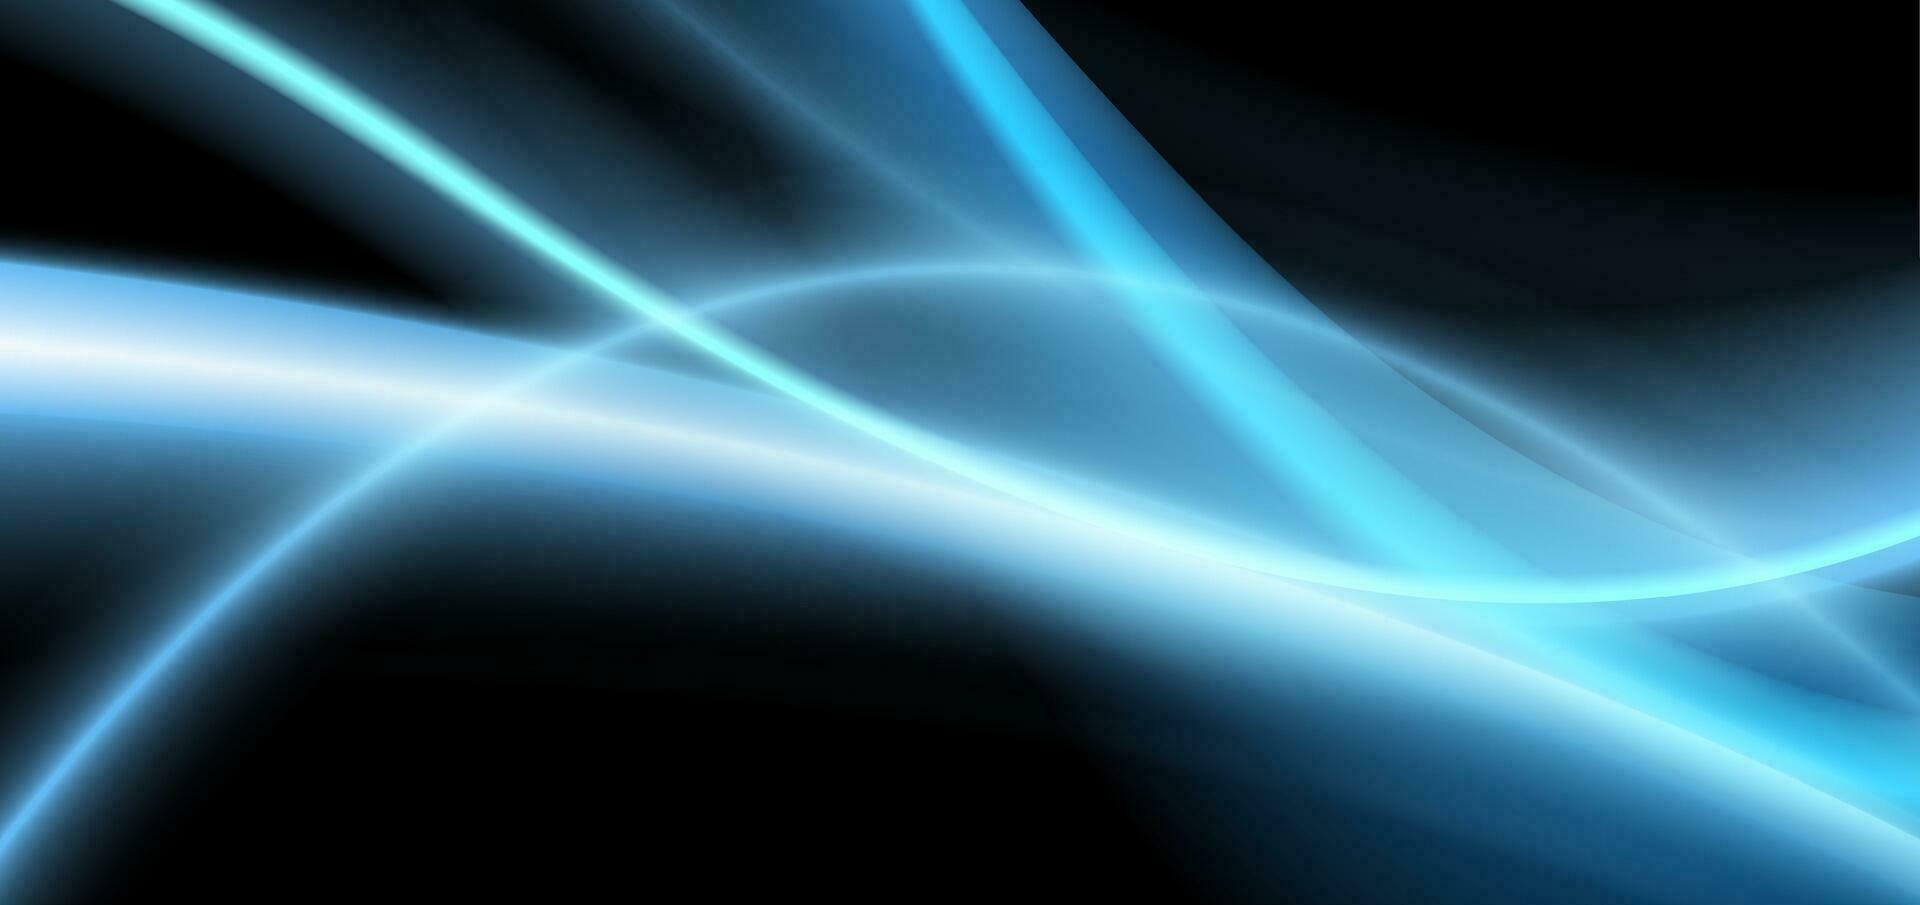 donker blauw glimmend glad vloeiende golven abstract achtergrond vector